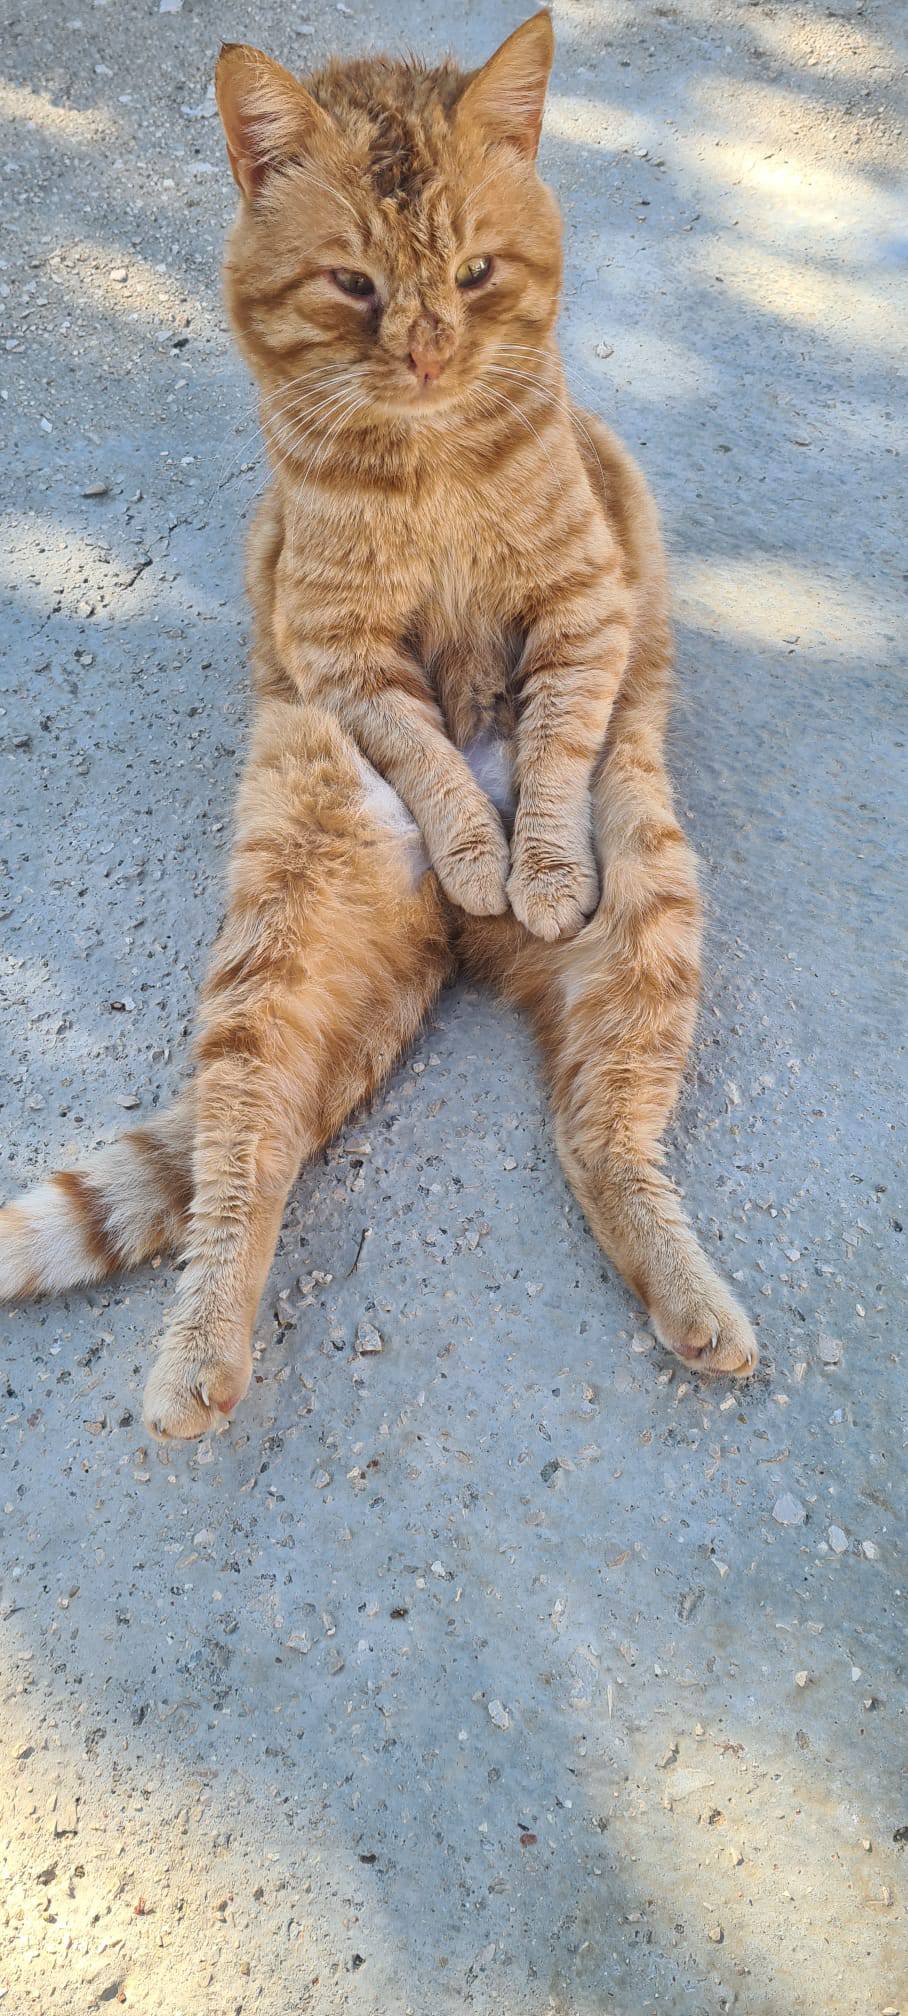 Upoznajte Duju, najpoznatijeg mačka na Korčuli. Sjedi kao čovjek i nikad nije imao curu